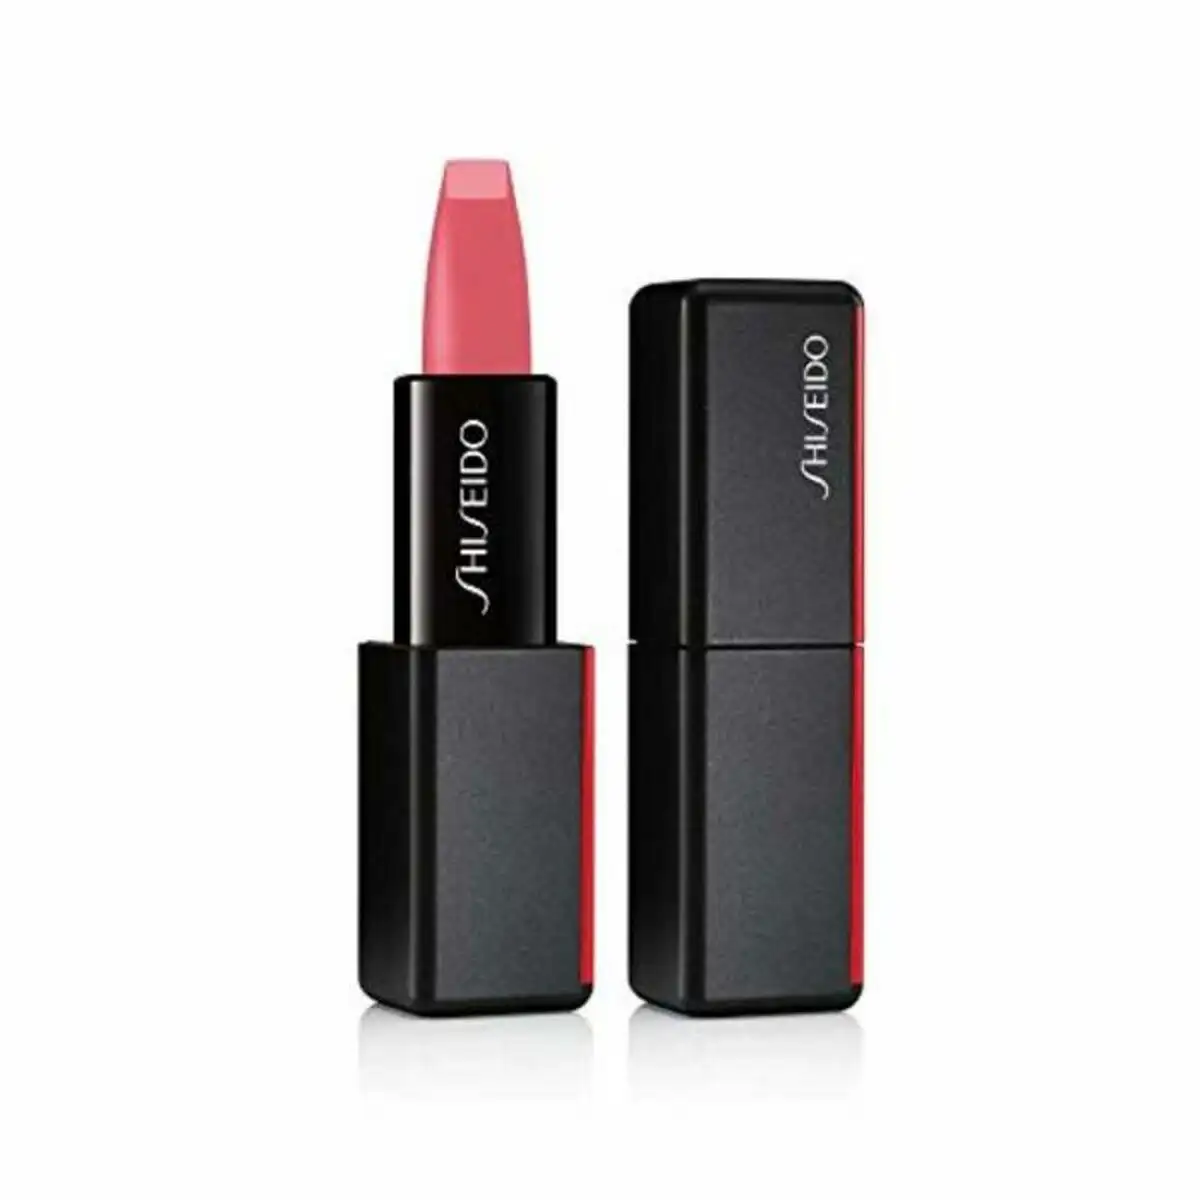 Rouge a le vres modernmatte shiseido 526 petit talon 4 g_7851. DIAYTAR SENEGAL - Votre Plaisir Shopping à Portée de Clic. Explorez notre boutique en ligne et trouvez des produits qui ajoutent une touche de bonheur à votre vie quotidienne.